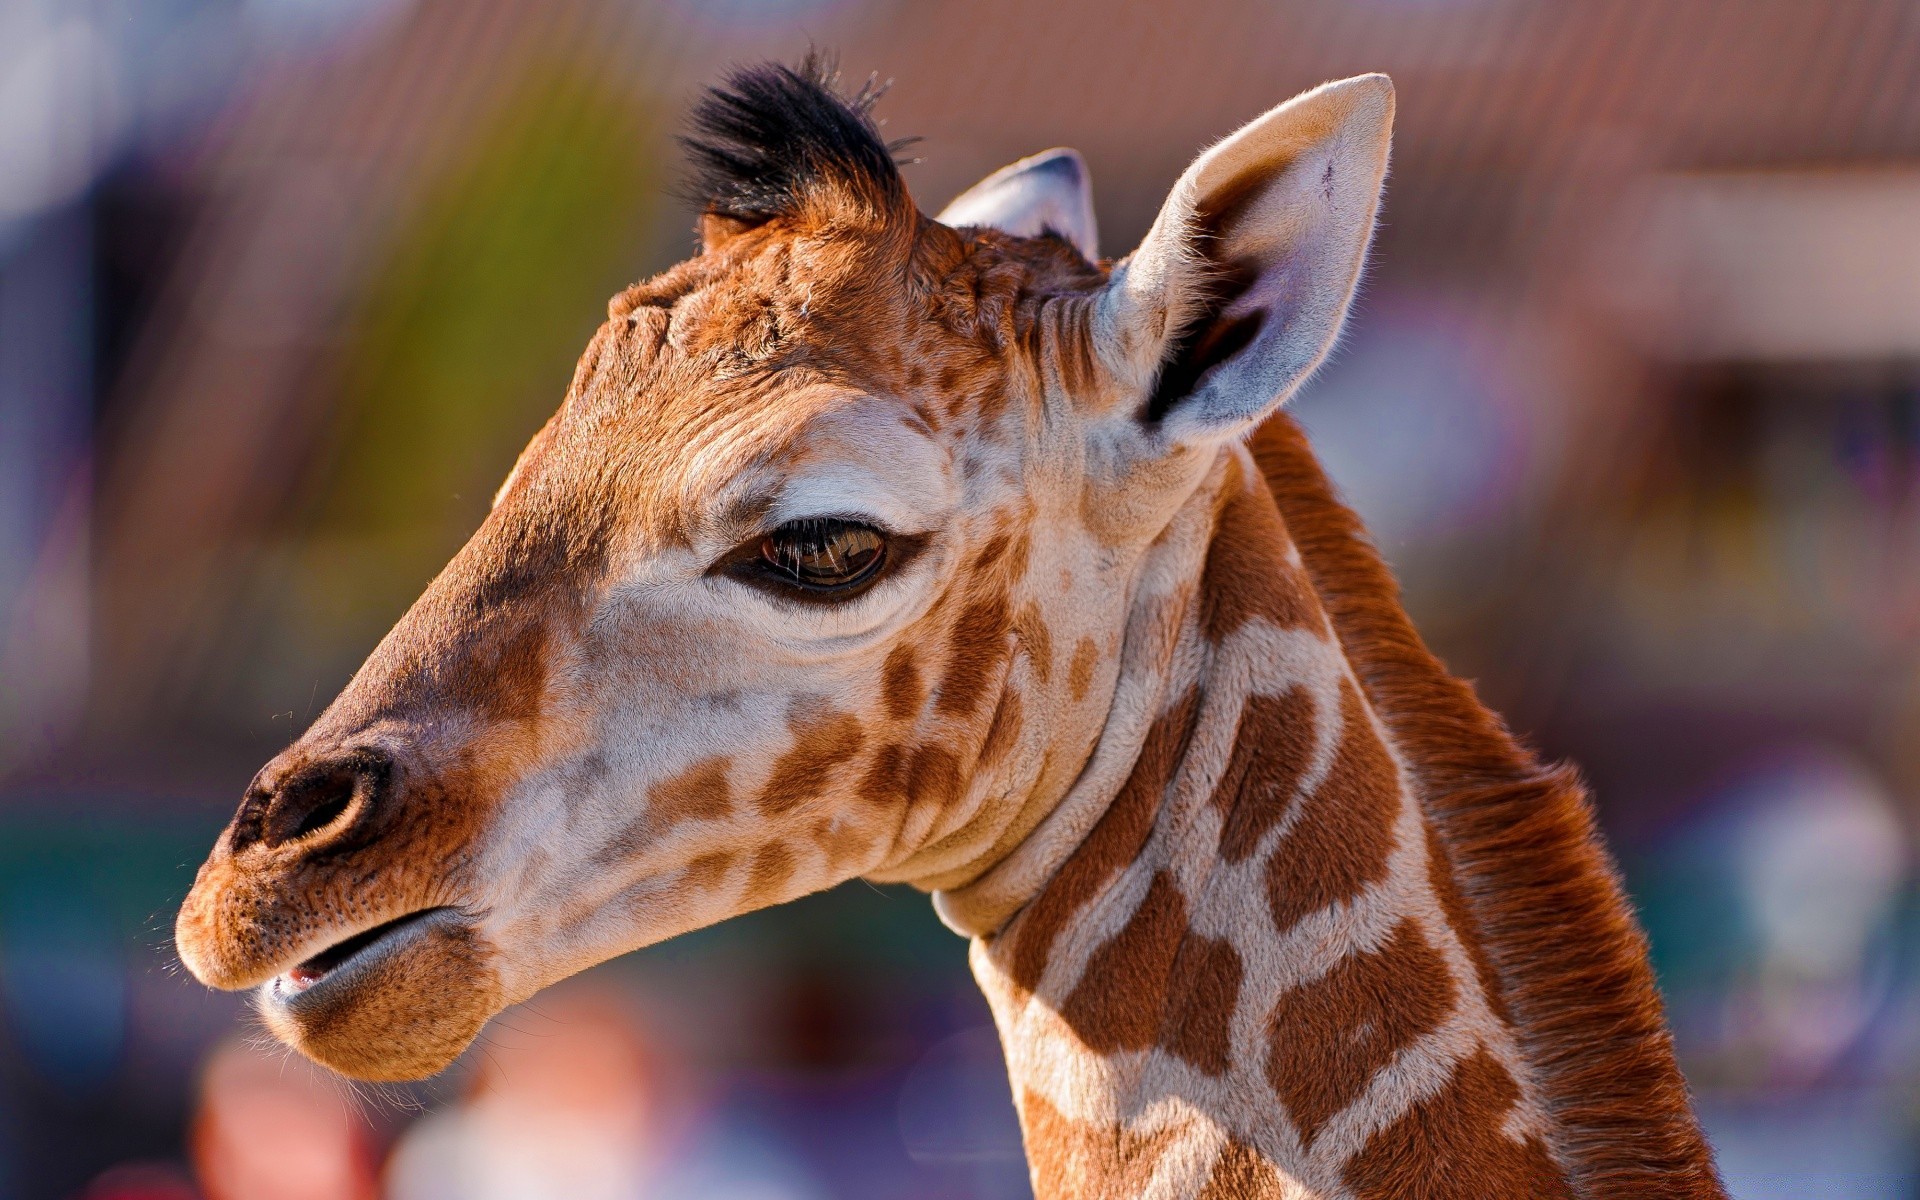 животные млекопитающее дикой природы животное жираф портрет дикий природа милые зоопарк глава шея просмотр один смешно волосы